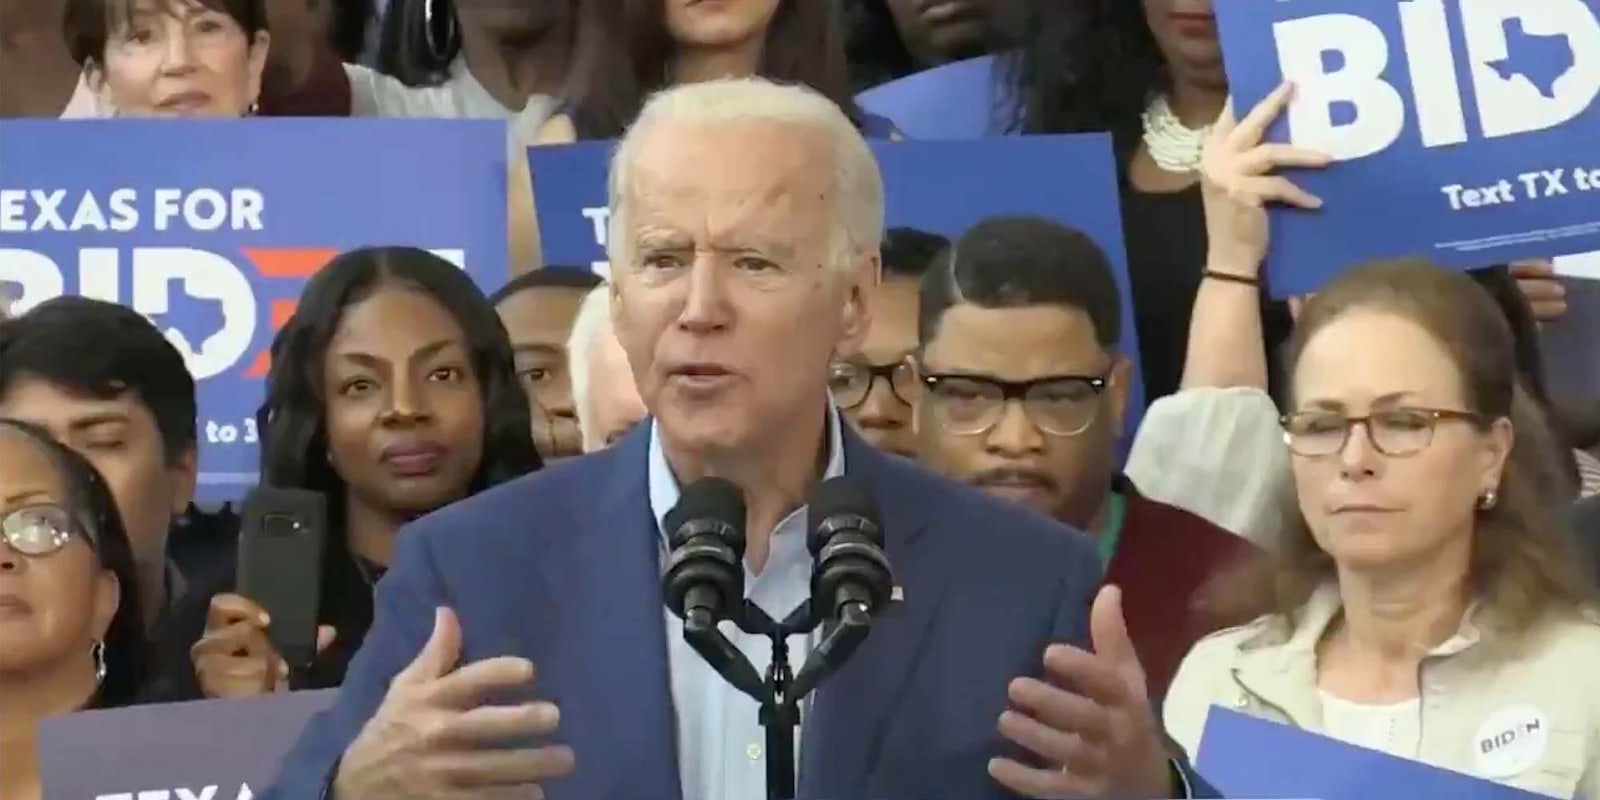 Democratic candidate Joe Biden speaking in Texas